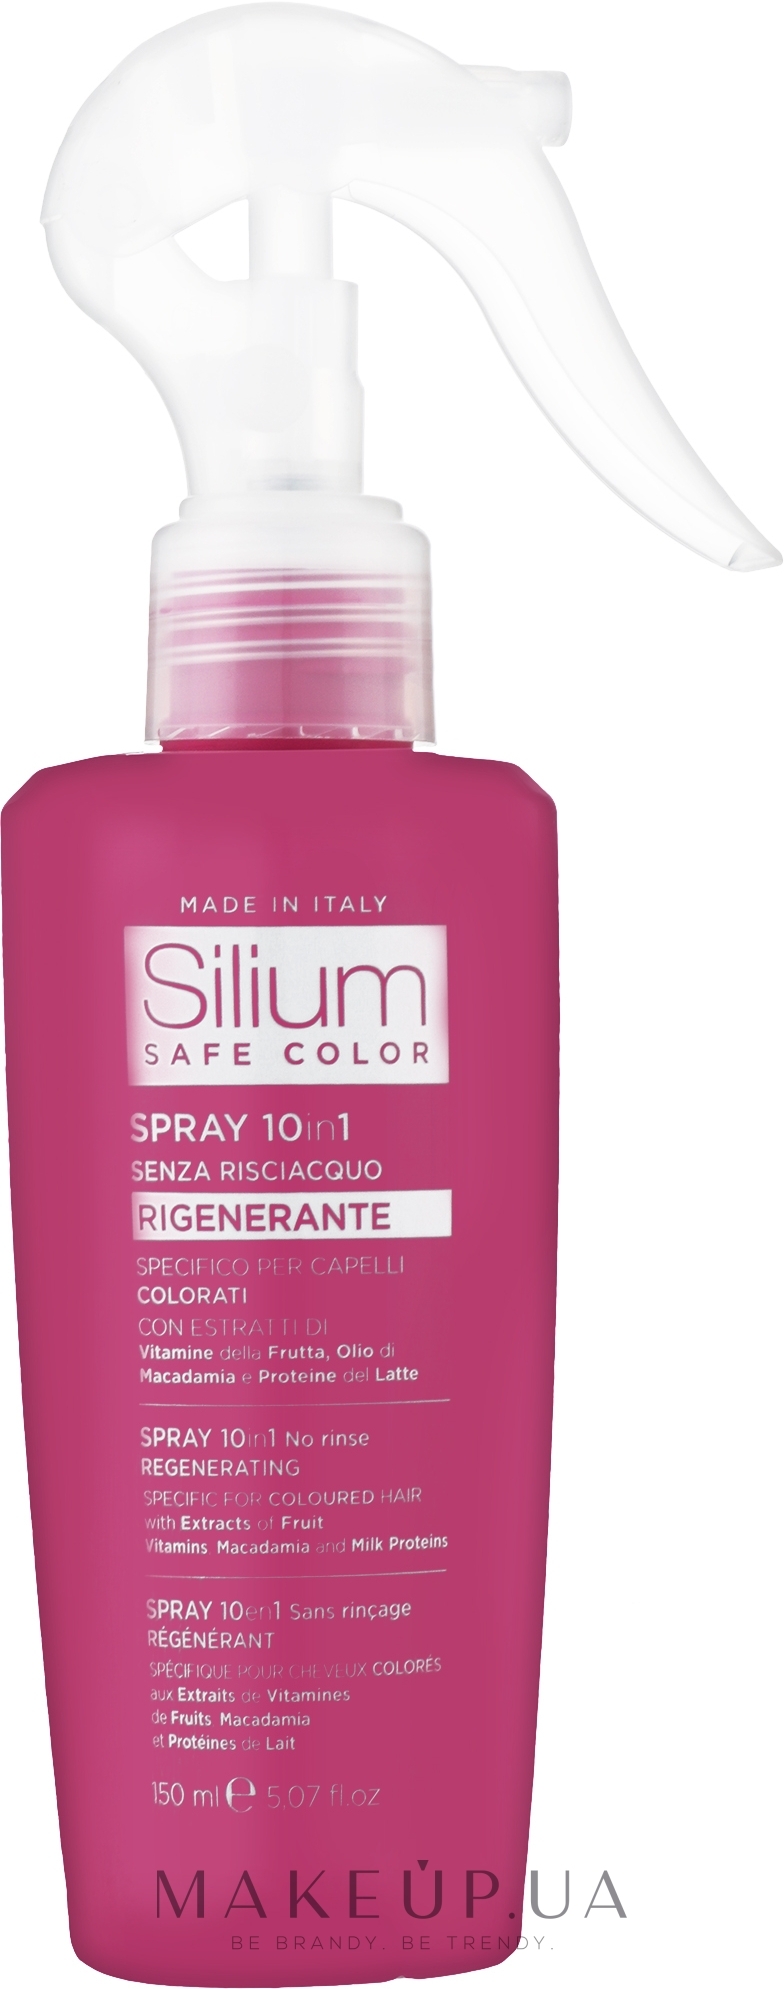 Спрей для сохранения цвета окрашенных волос "10 преимуществ в 1" - Silium Safe Color Spray Color Protector 10 Benefits in 1 — фото 150ml